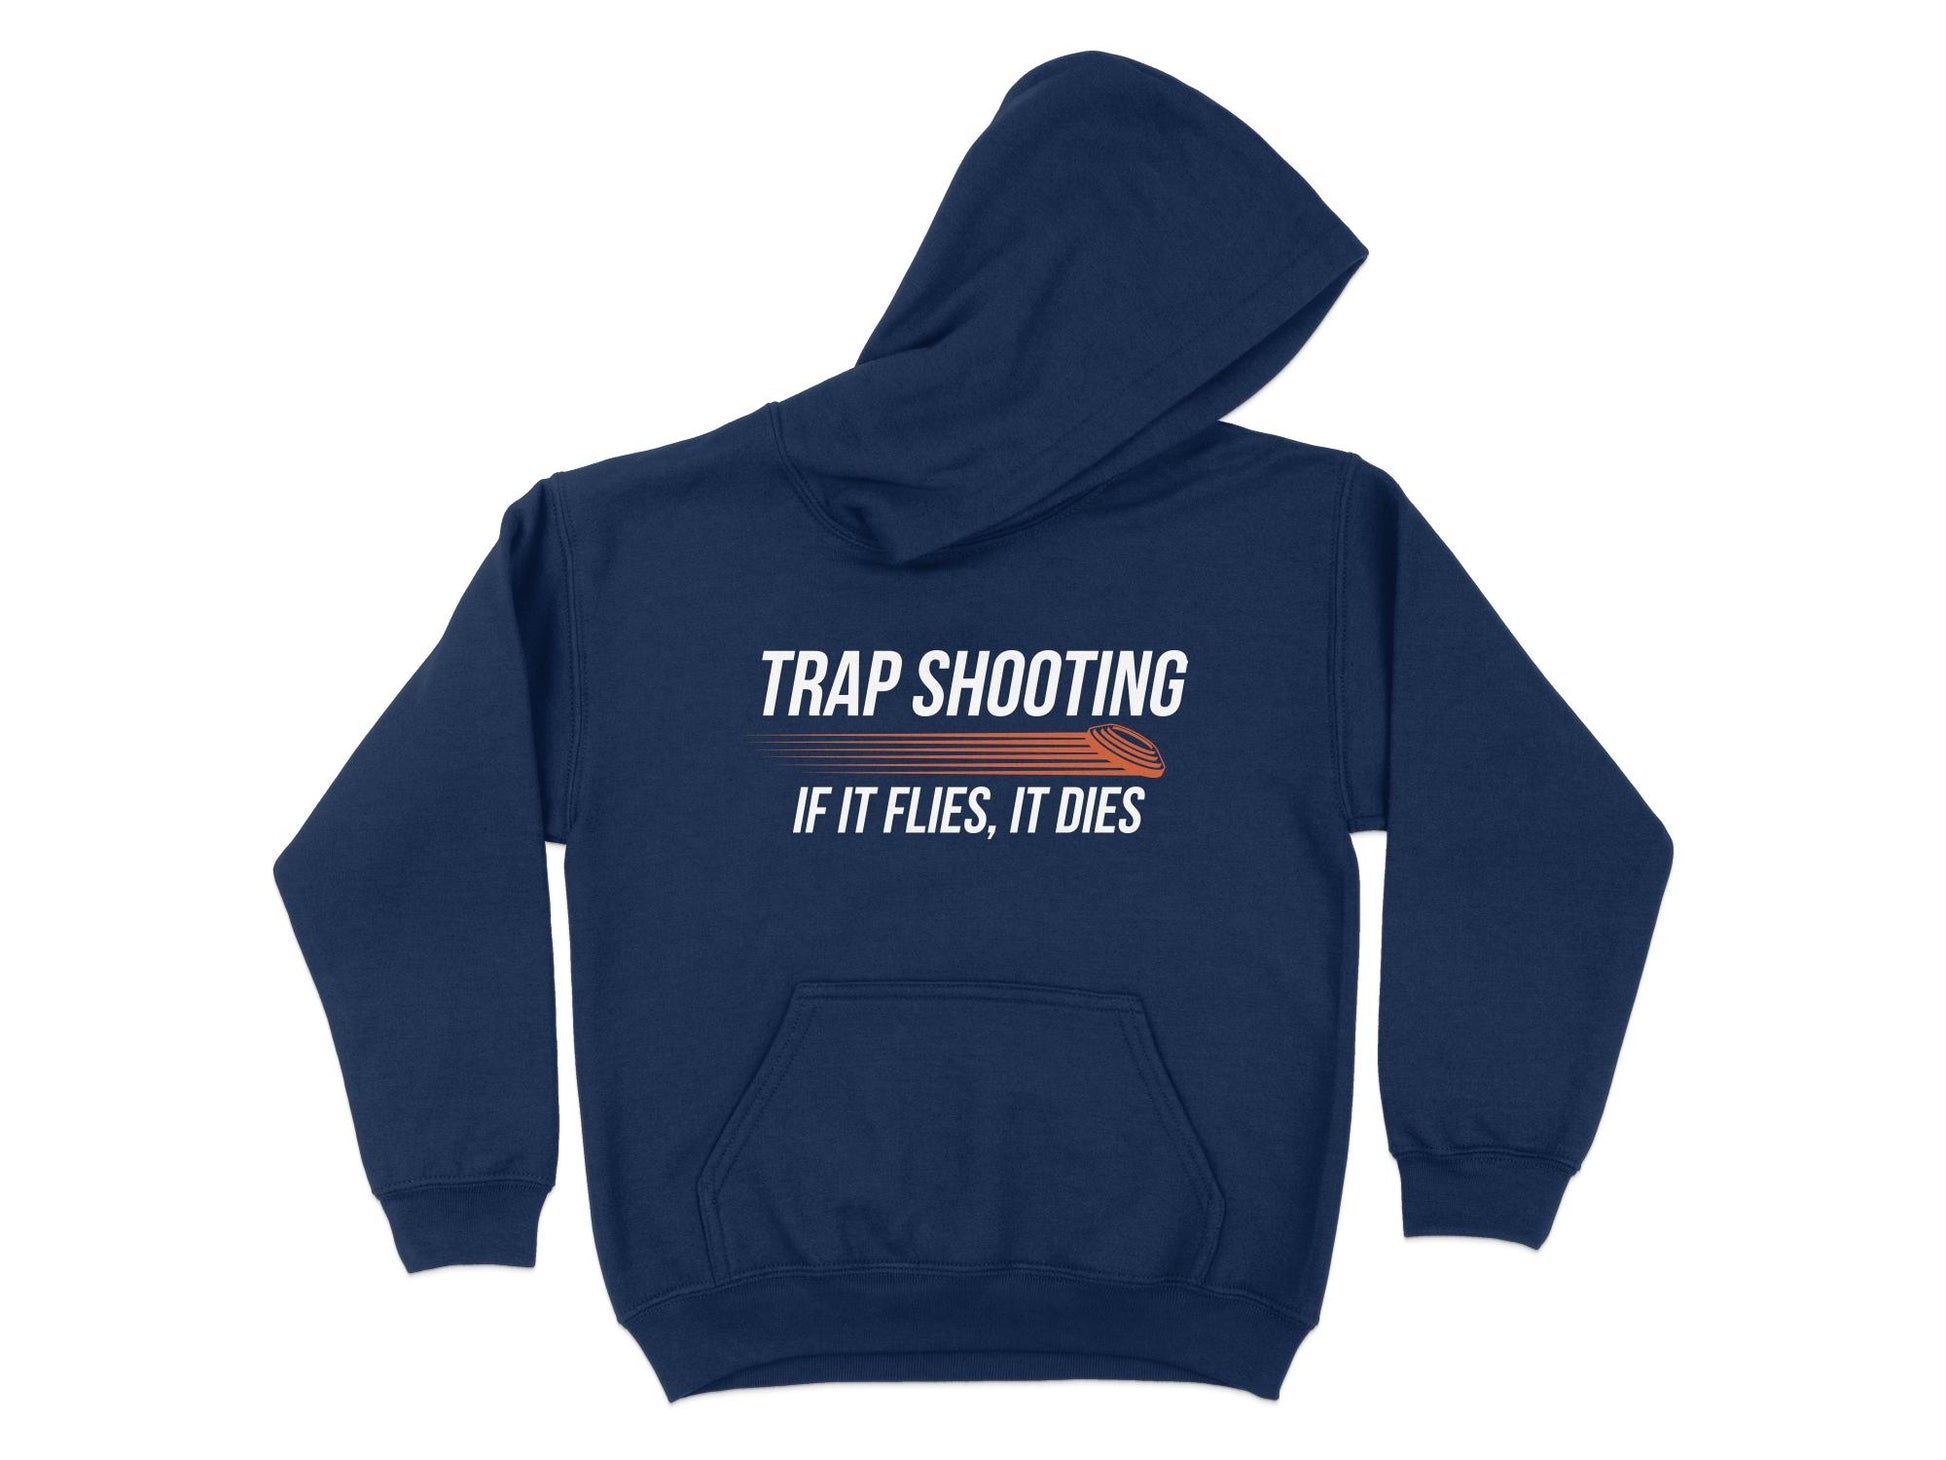 Trap Shooting Hoodie, If It Flies It Dies, navy blue